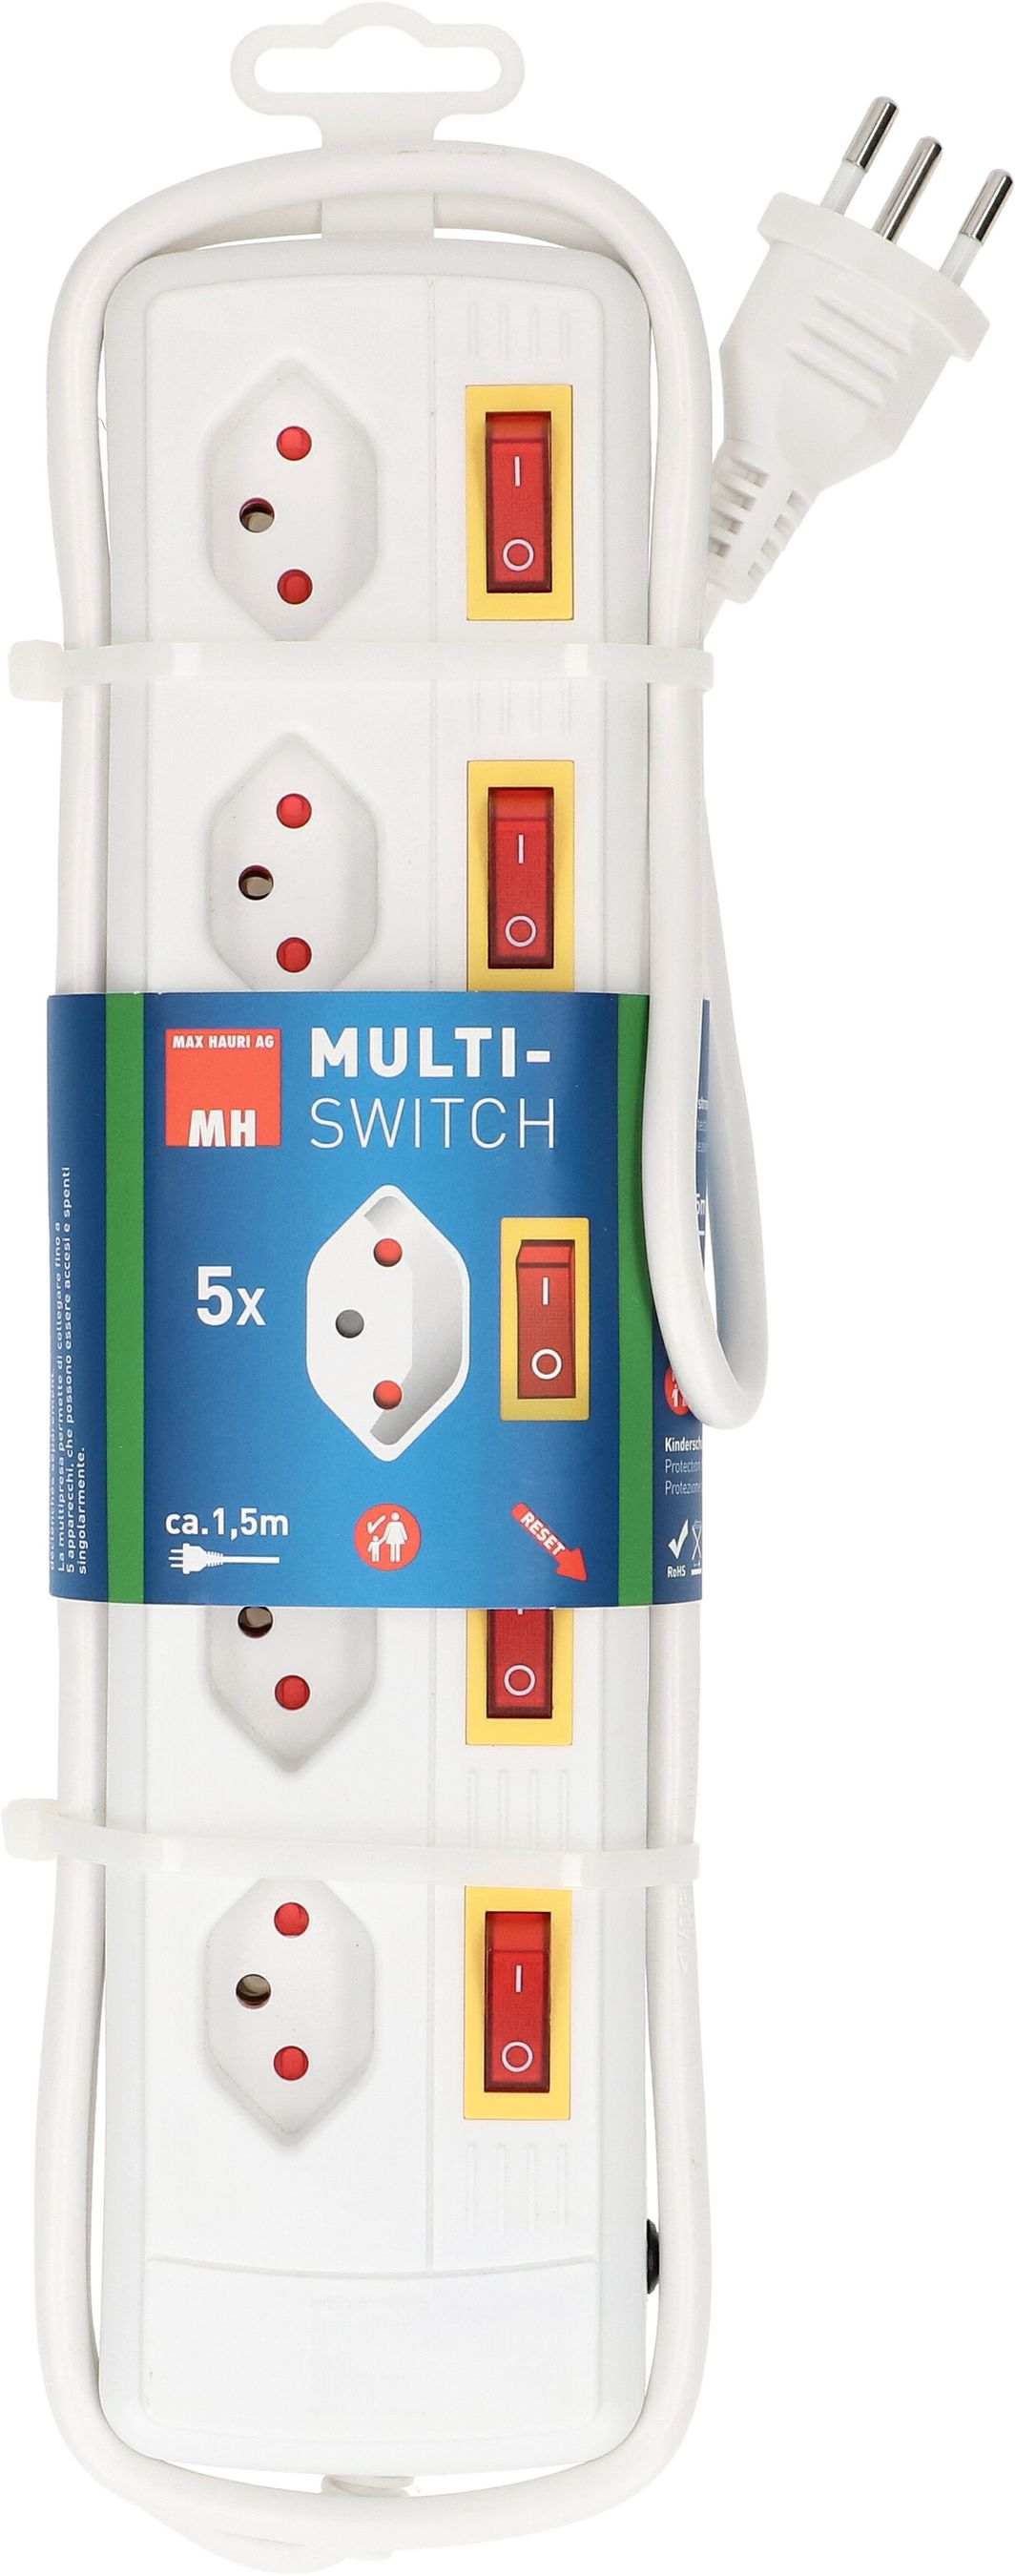 Multiple socket Multi-Switch 5x type 13